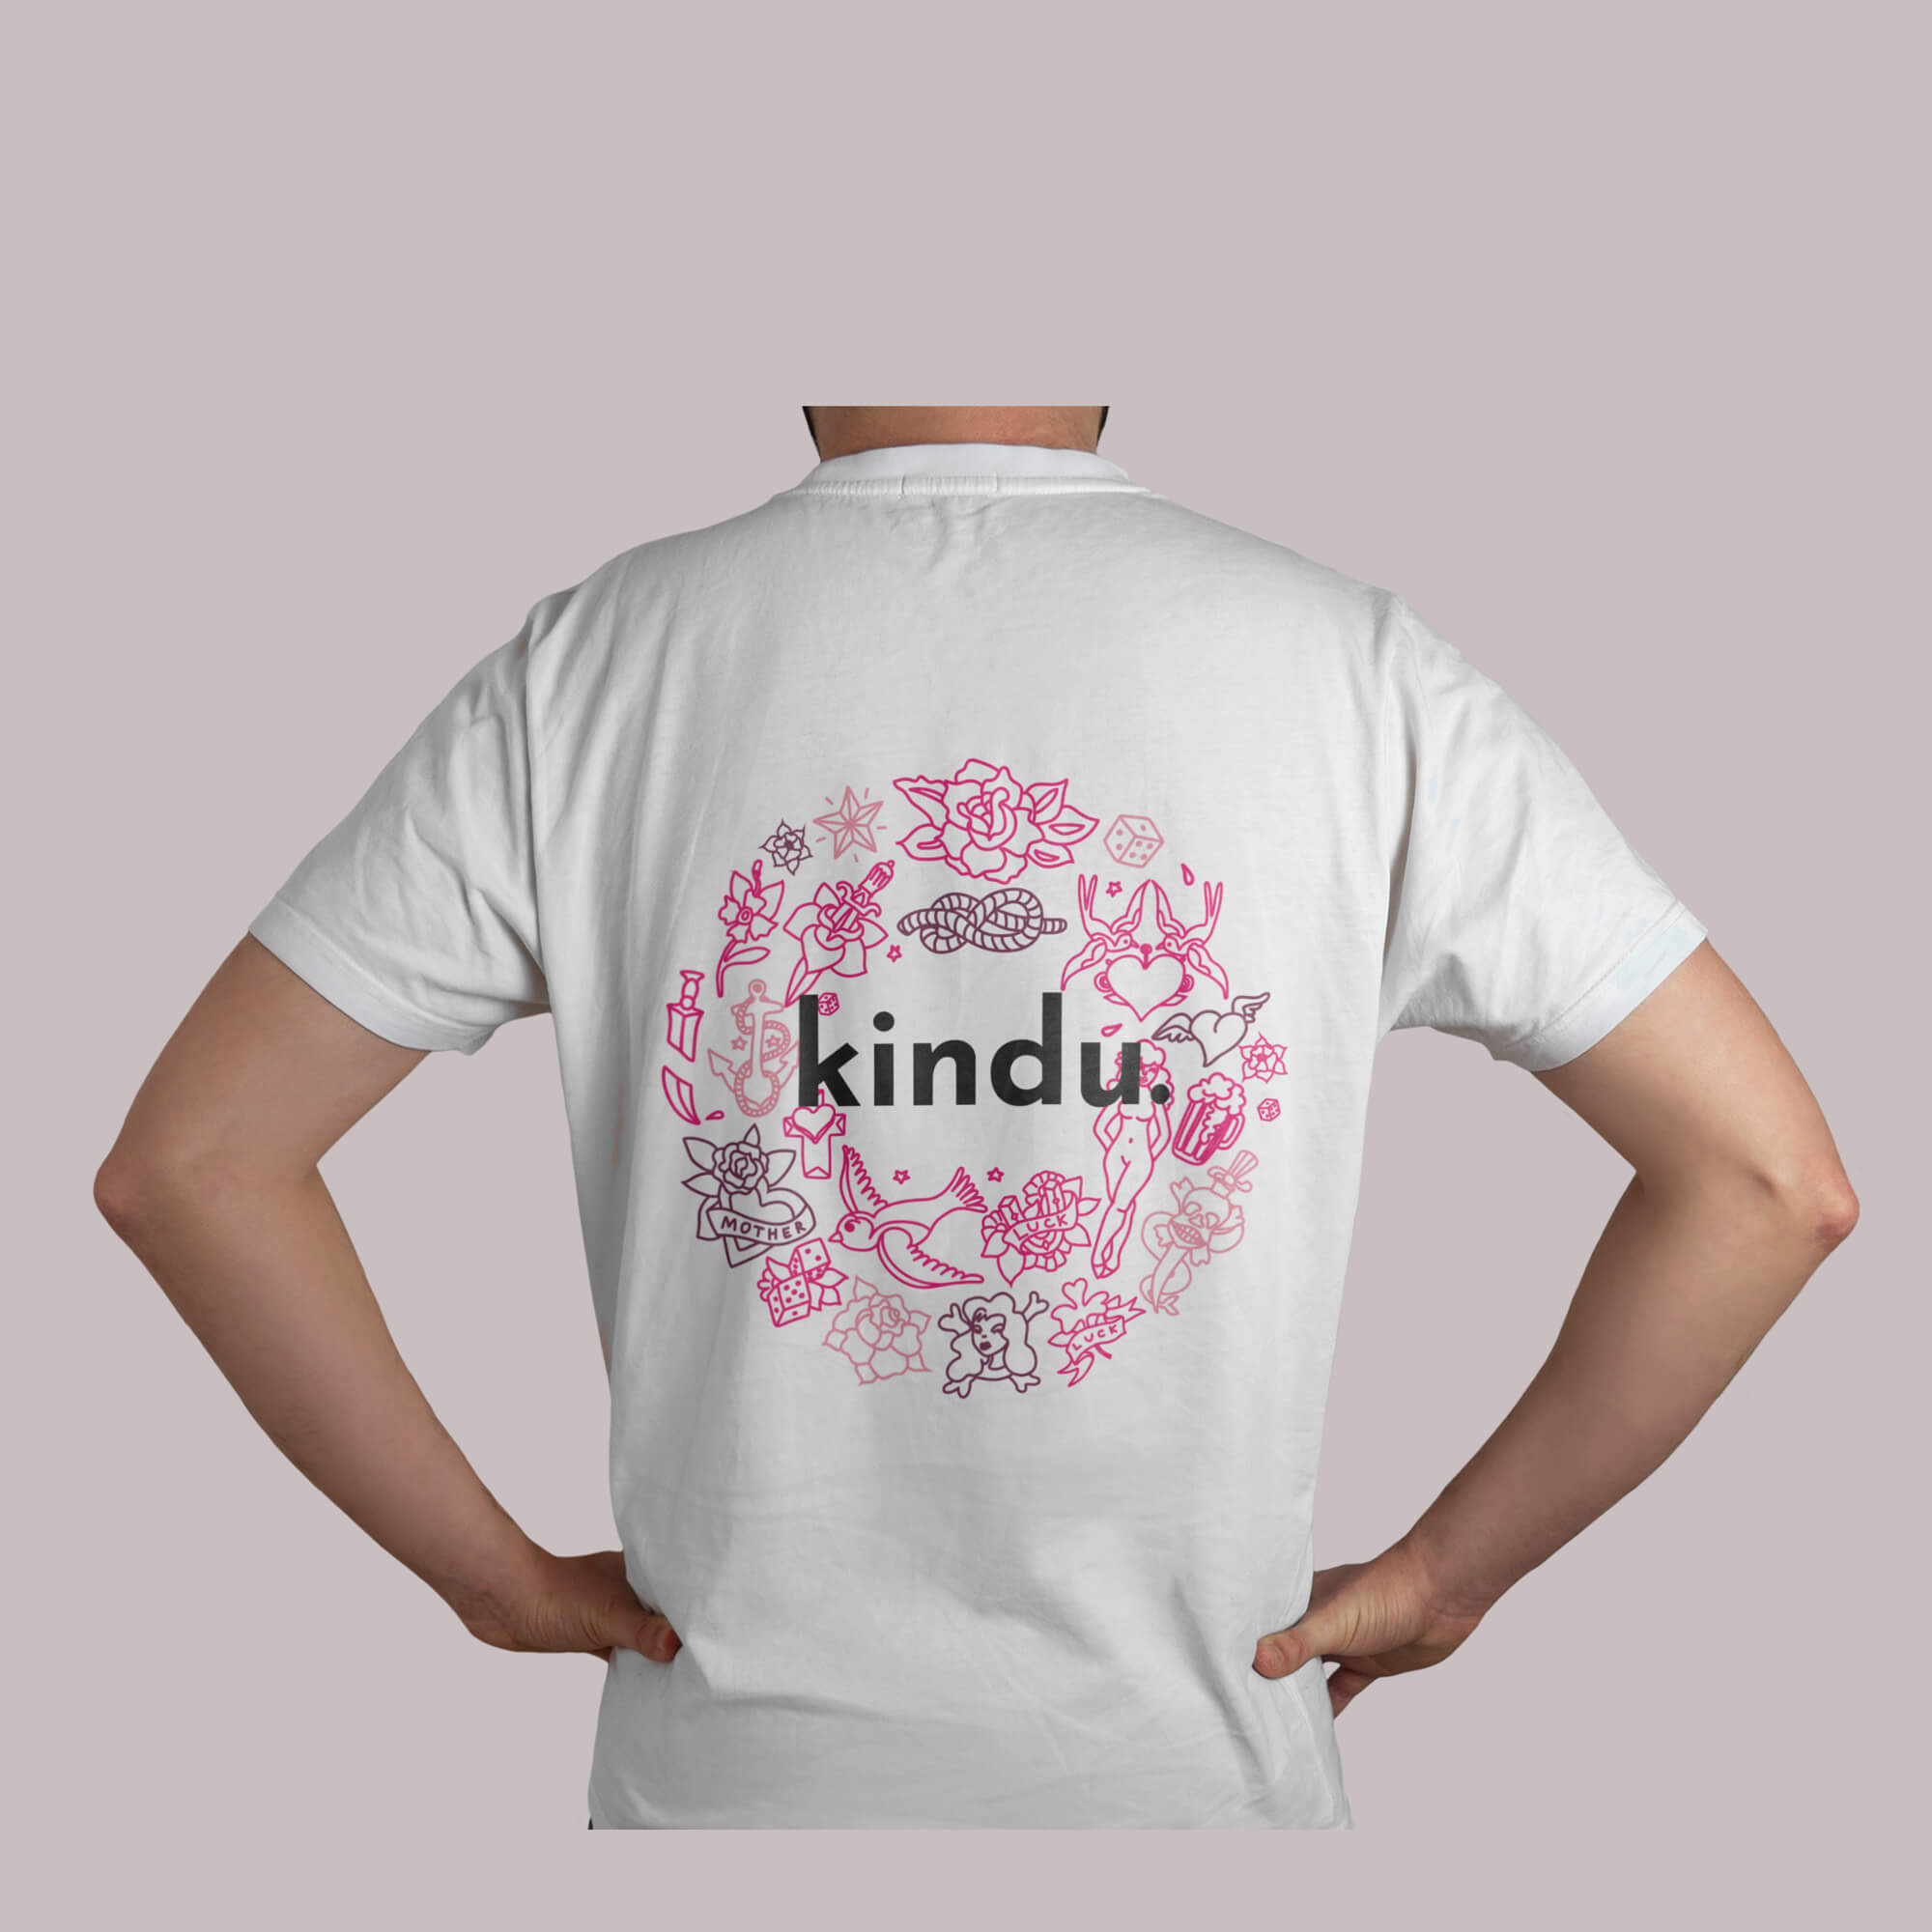 Imagen de la camiseta blanca por detrás de la tienda de Kindu, rotulada con el logo en el centro rodeado de dibujos contoneados en tonos rosas y malvas con un estilo tattoo.